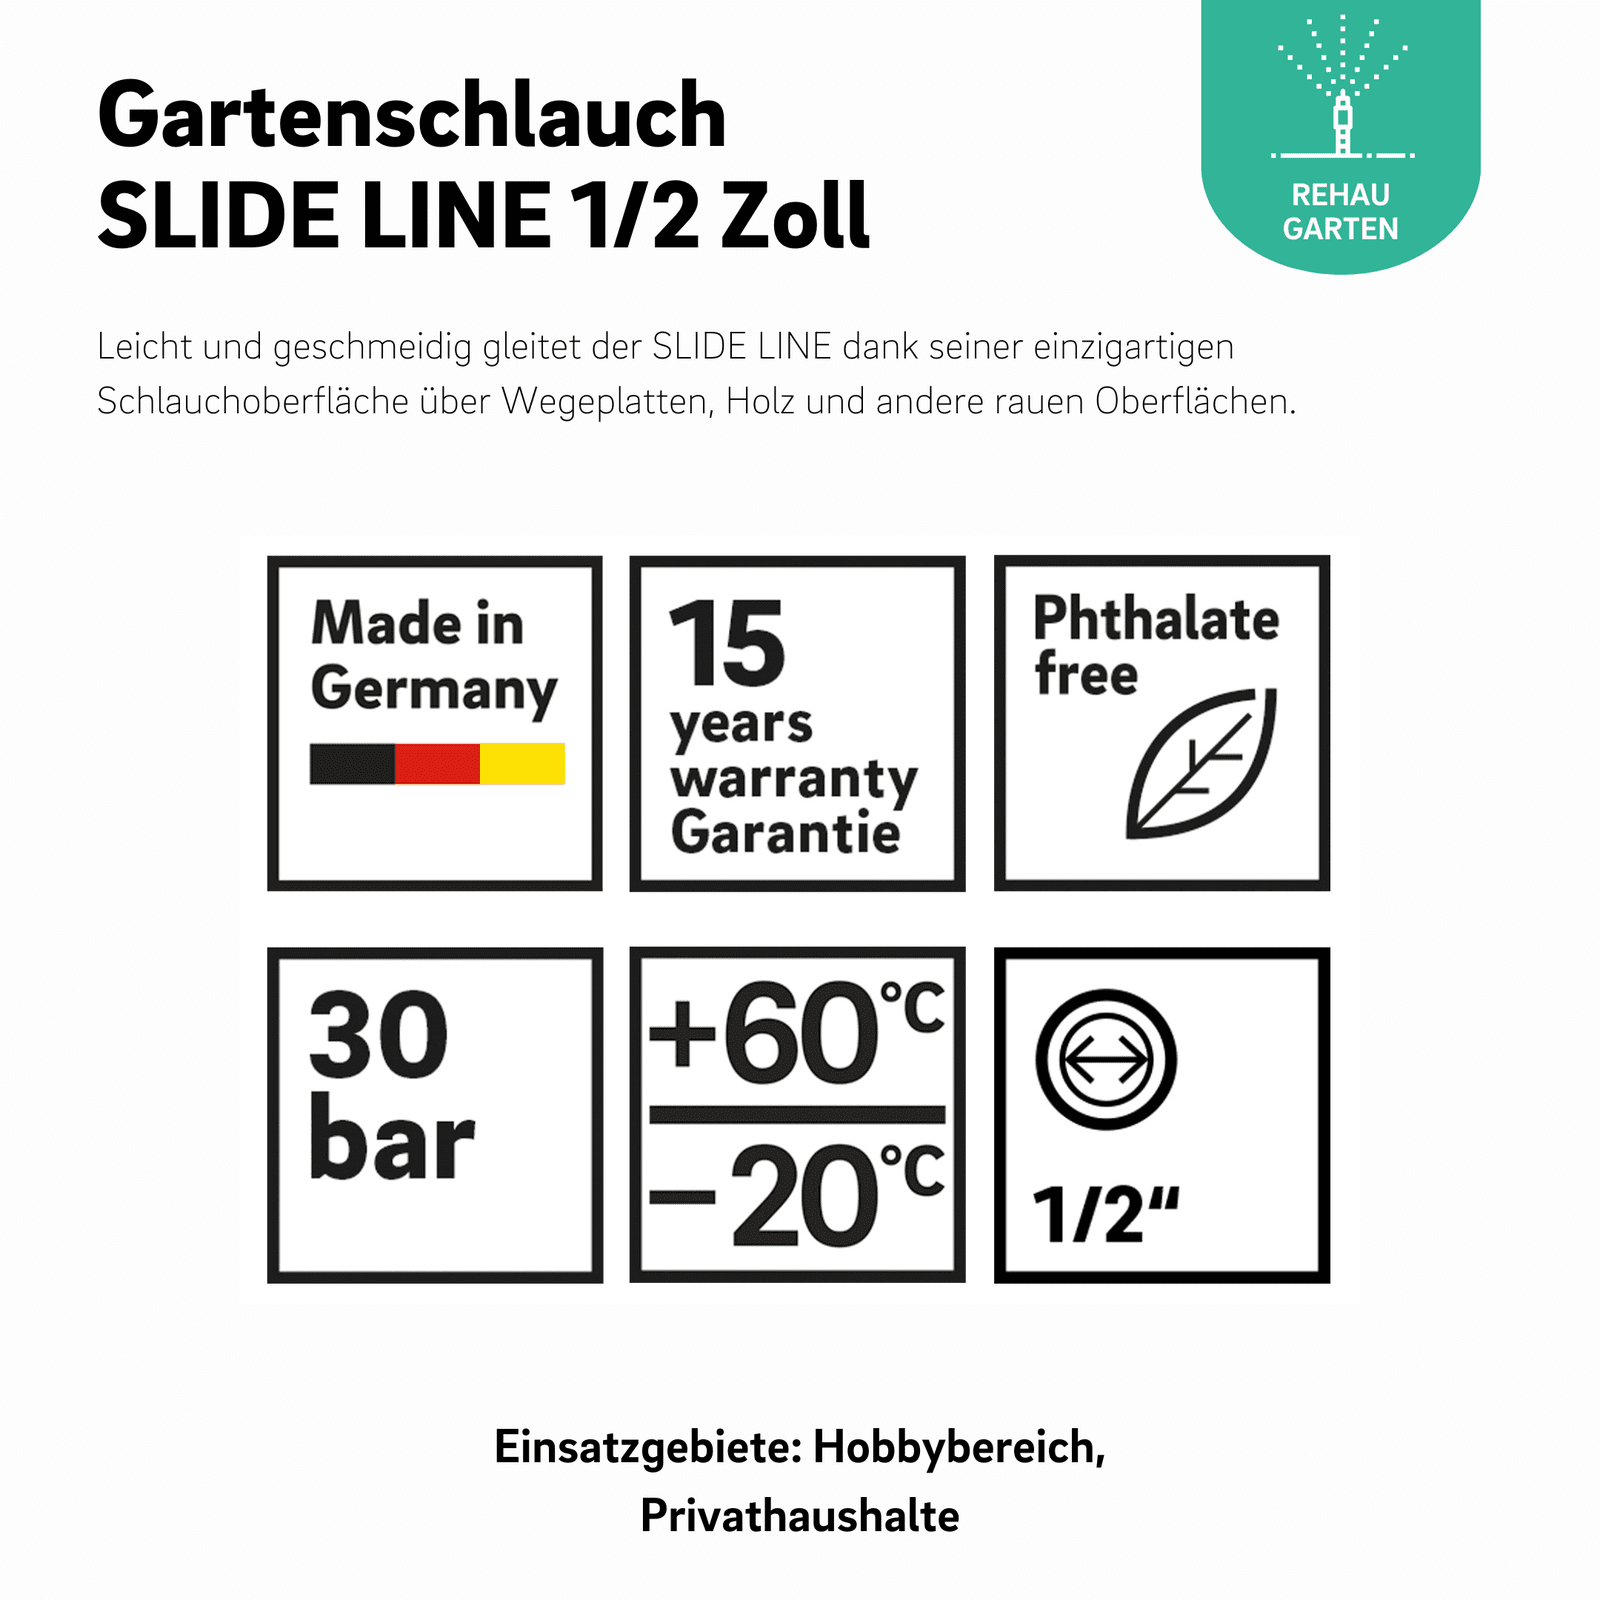 Gartenschlauch SLIDE LINE 1/2 Zoll - REHAU Gartenshop